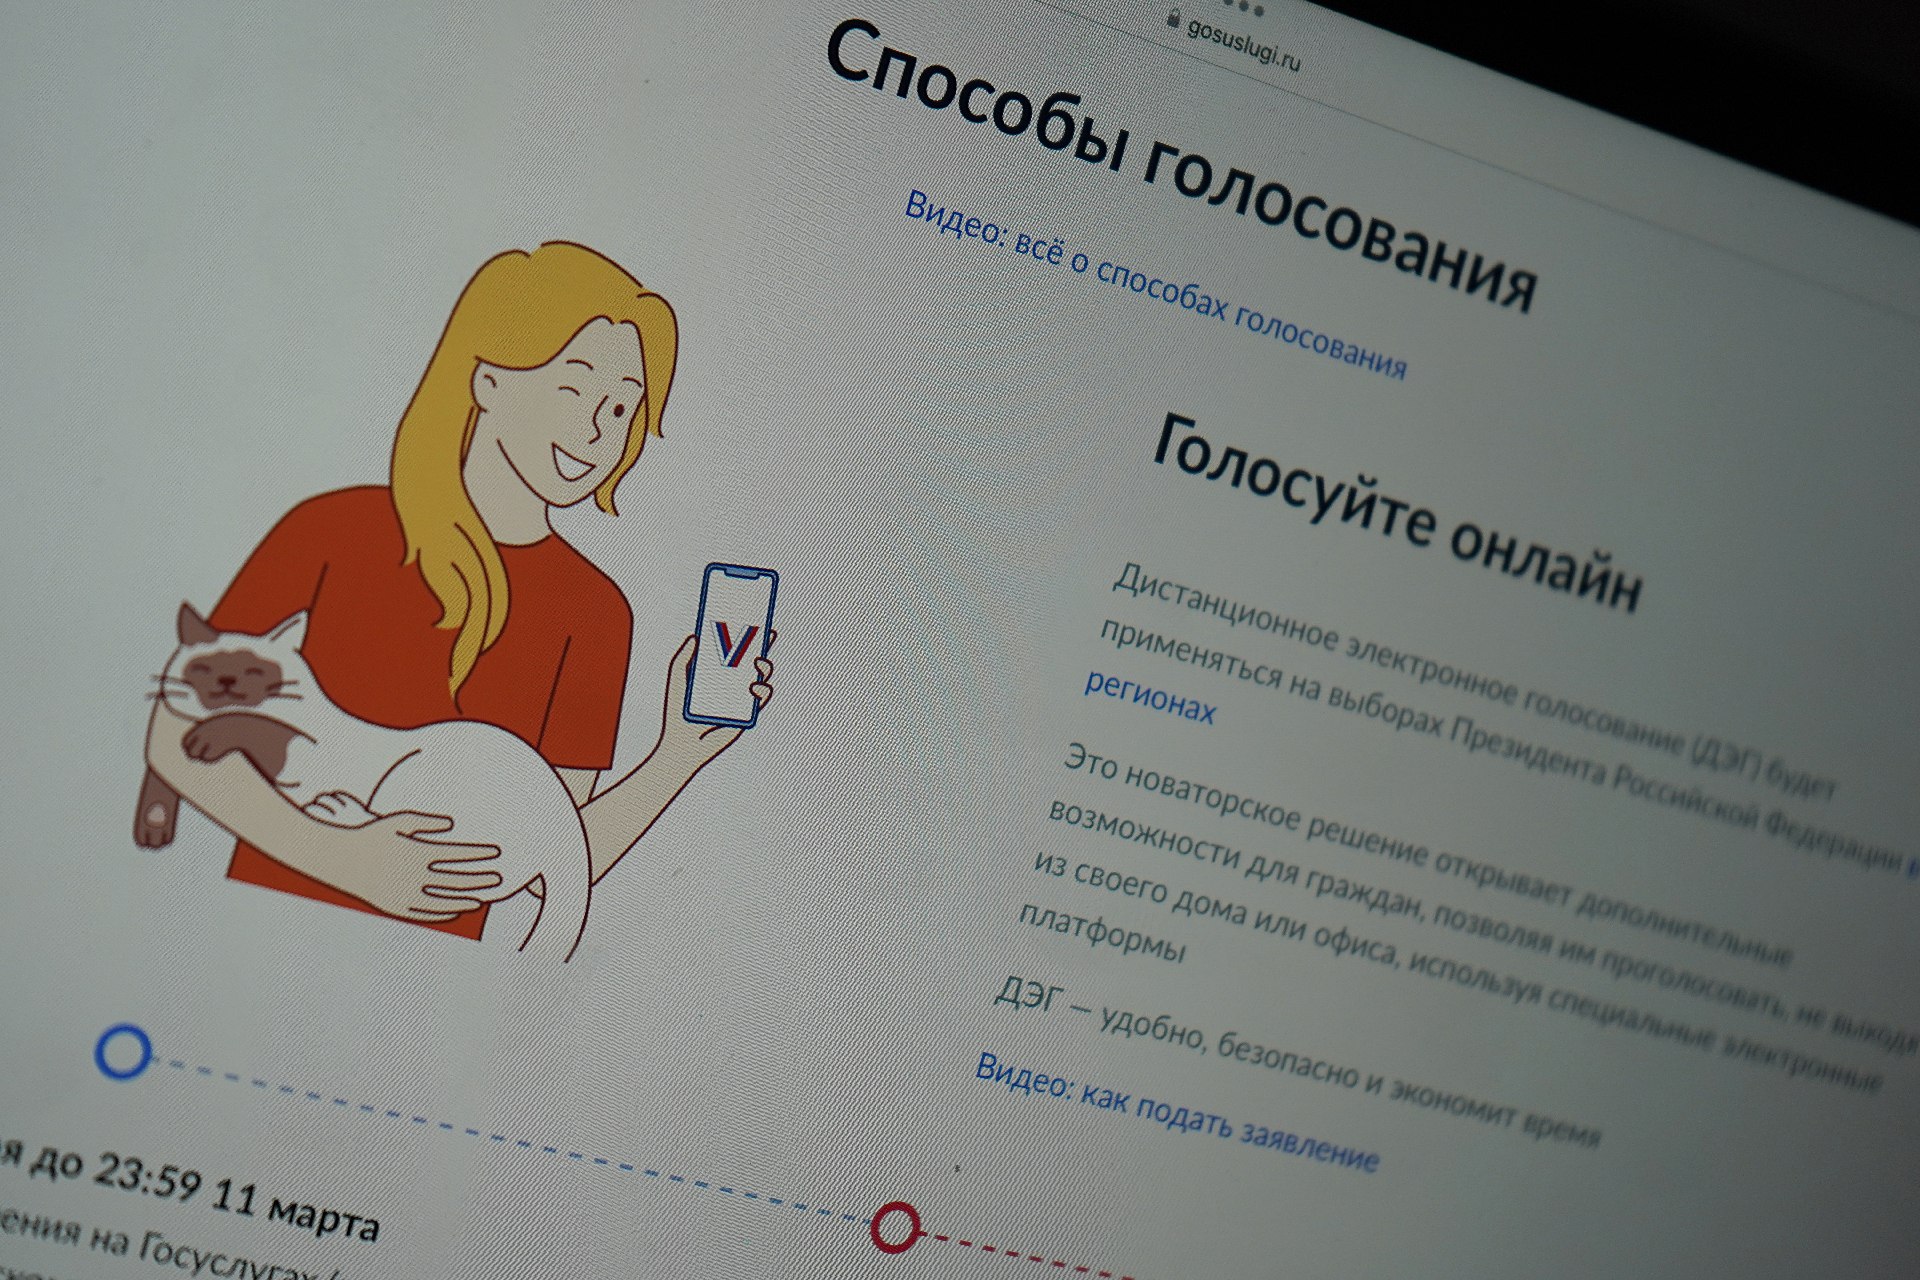 ОШ: Московская система ДЭГ отразила в ходе выборов свыше 4,6 млн кибератак. Фото: Анна Быкова, «Вечерняя Москва»